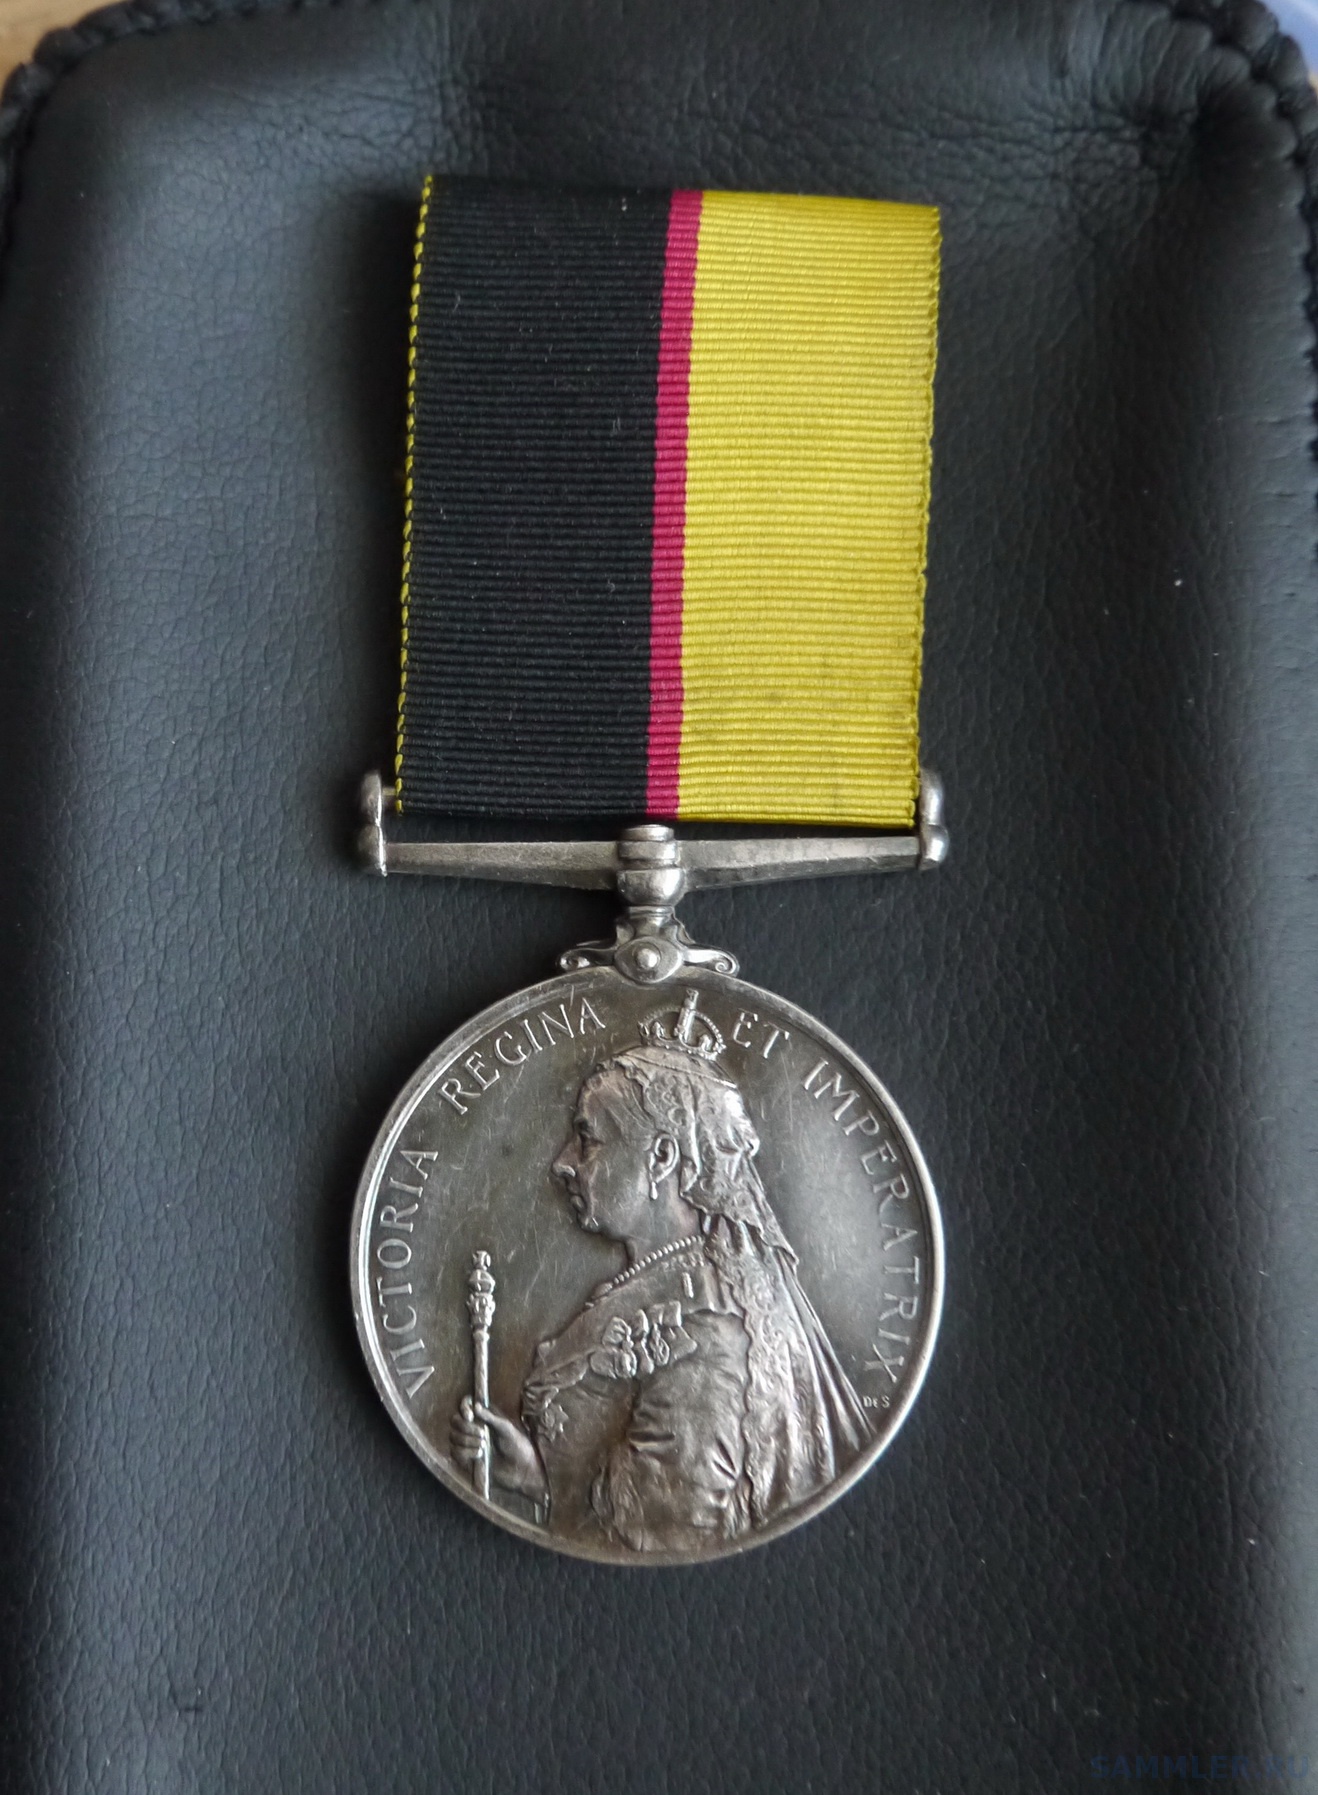 Королев награды. Медаль "Королева красоты". Настольная русско-французская медаль 1896. S Sudan Medal Heroic.